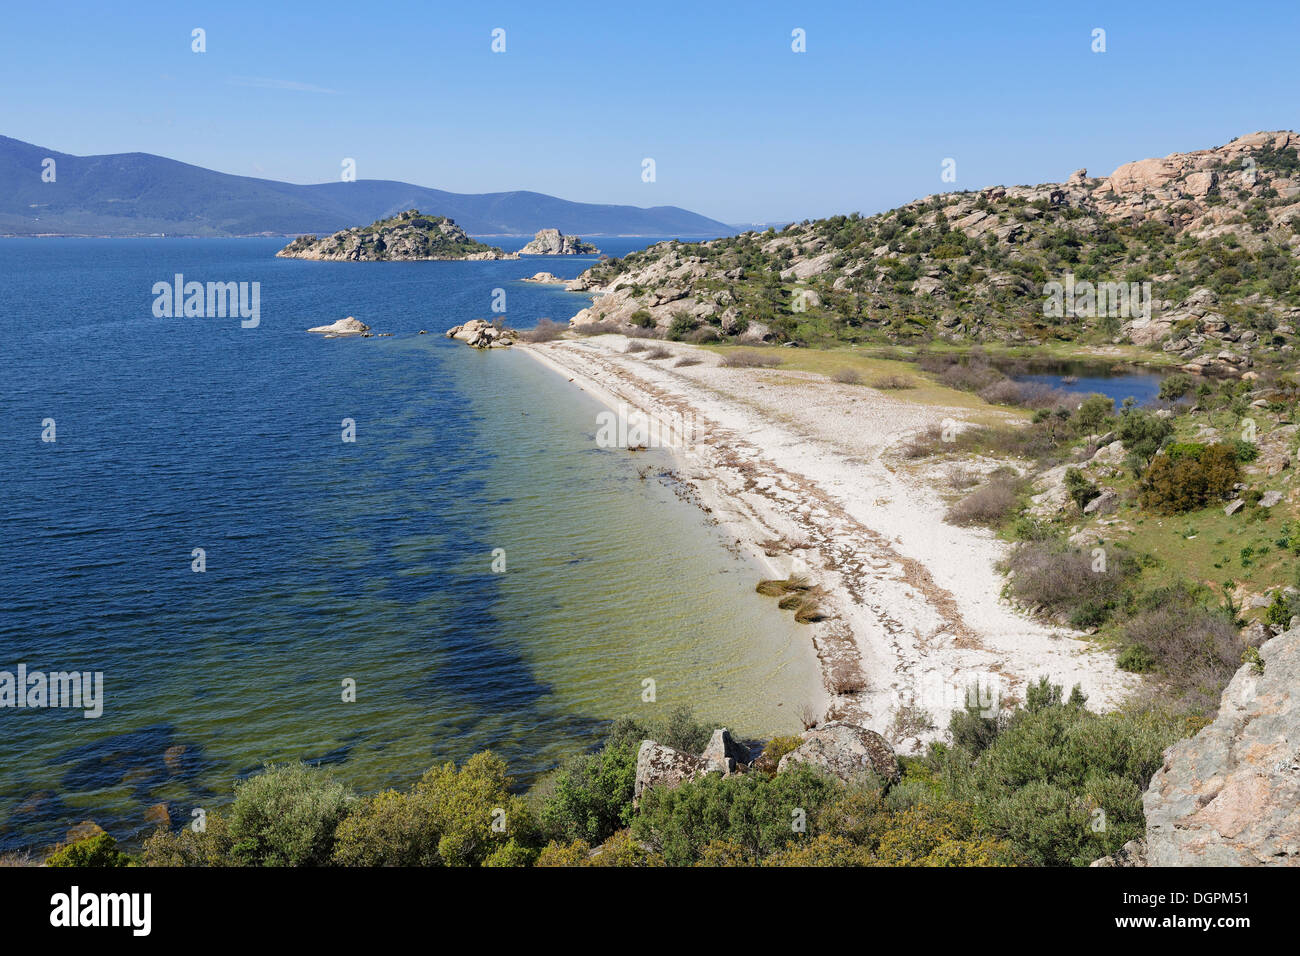 Il lago di Bafa con Ikizce isola, isole gemelle, Lago Bafa, Muğla provincia, regione del Mar Egeo, Turchia Foto Stock